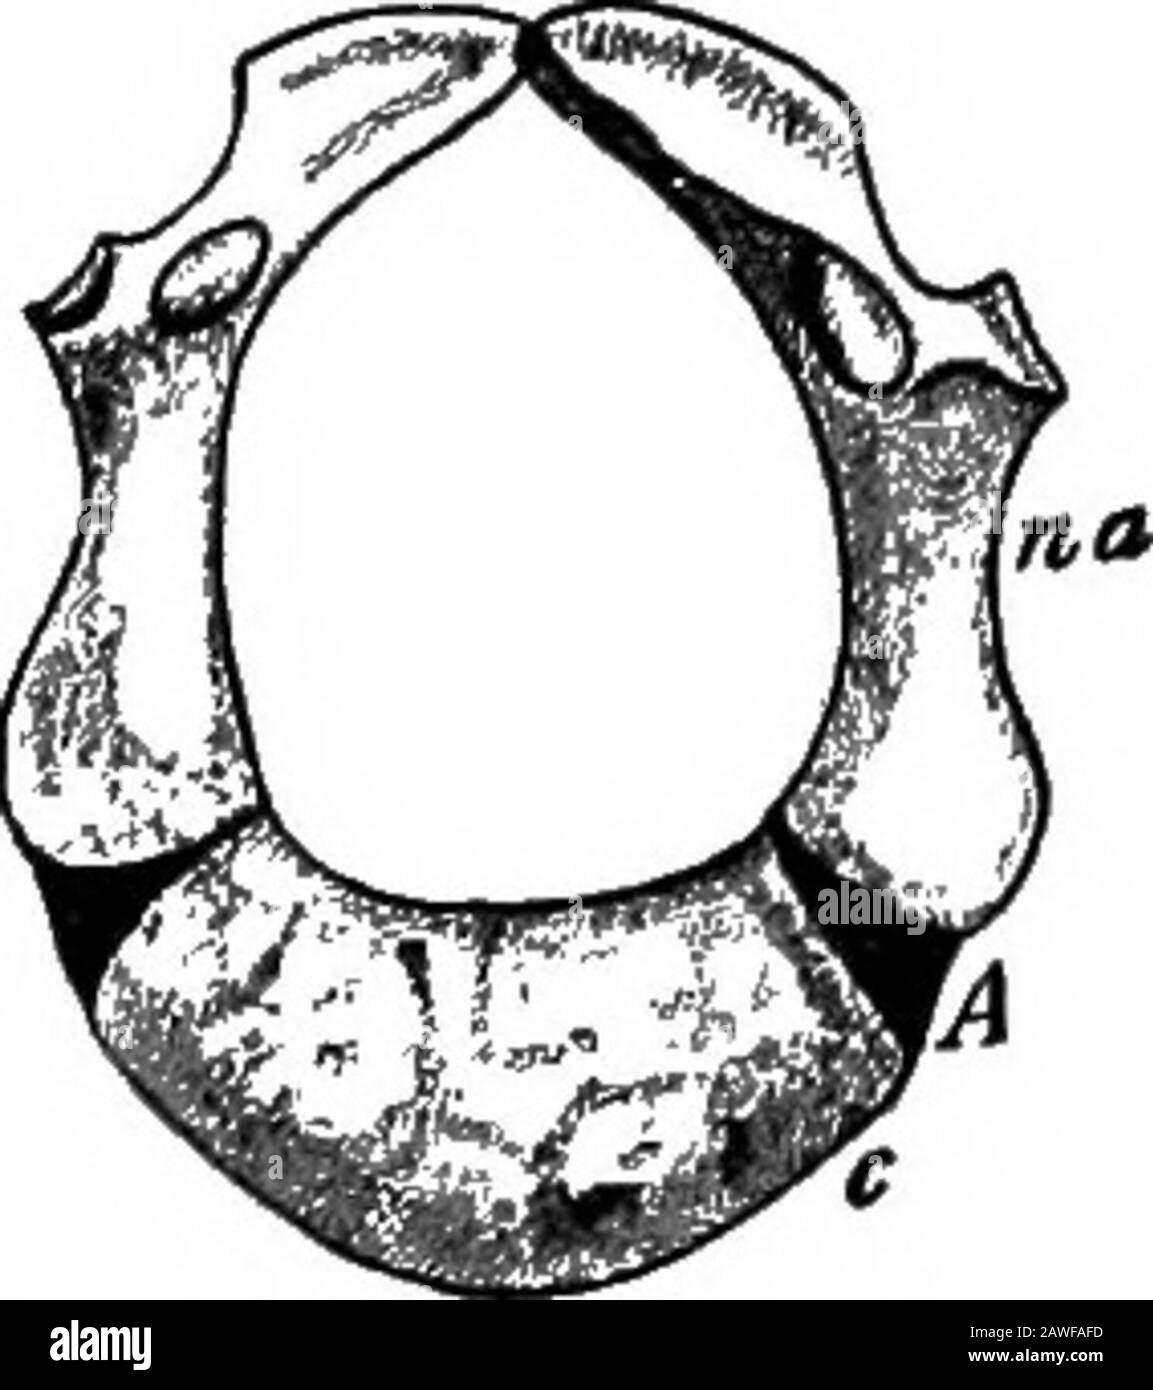 Le développement du corps humain; un manuel d'embryologie humaine . r-cles. Enfin, dans la région sacrale, les côtes sont des plaques plates de toshute réduites, qui s'unissent pour former les masses lateralmades du sacrum. Ils sont habituellement développés seulement en relation avec les trois premières vertèbres sacrées, les deux derniers sacrals et les coccygeals n'ayant pas de côtes.16 186 LE DÉVELOPPEMENT DU CORPS HUMAIN. La limitation des côtes aux trois avant sacral vert-brae est expliquée par le fait que la ceinture pelvienne est principalement l'inrelation seulement aux deux dernières, dont les côtes sont par conséquent pressées sup. La nervure-BE Banque D'Images